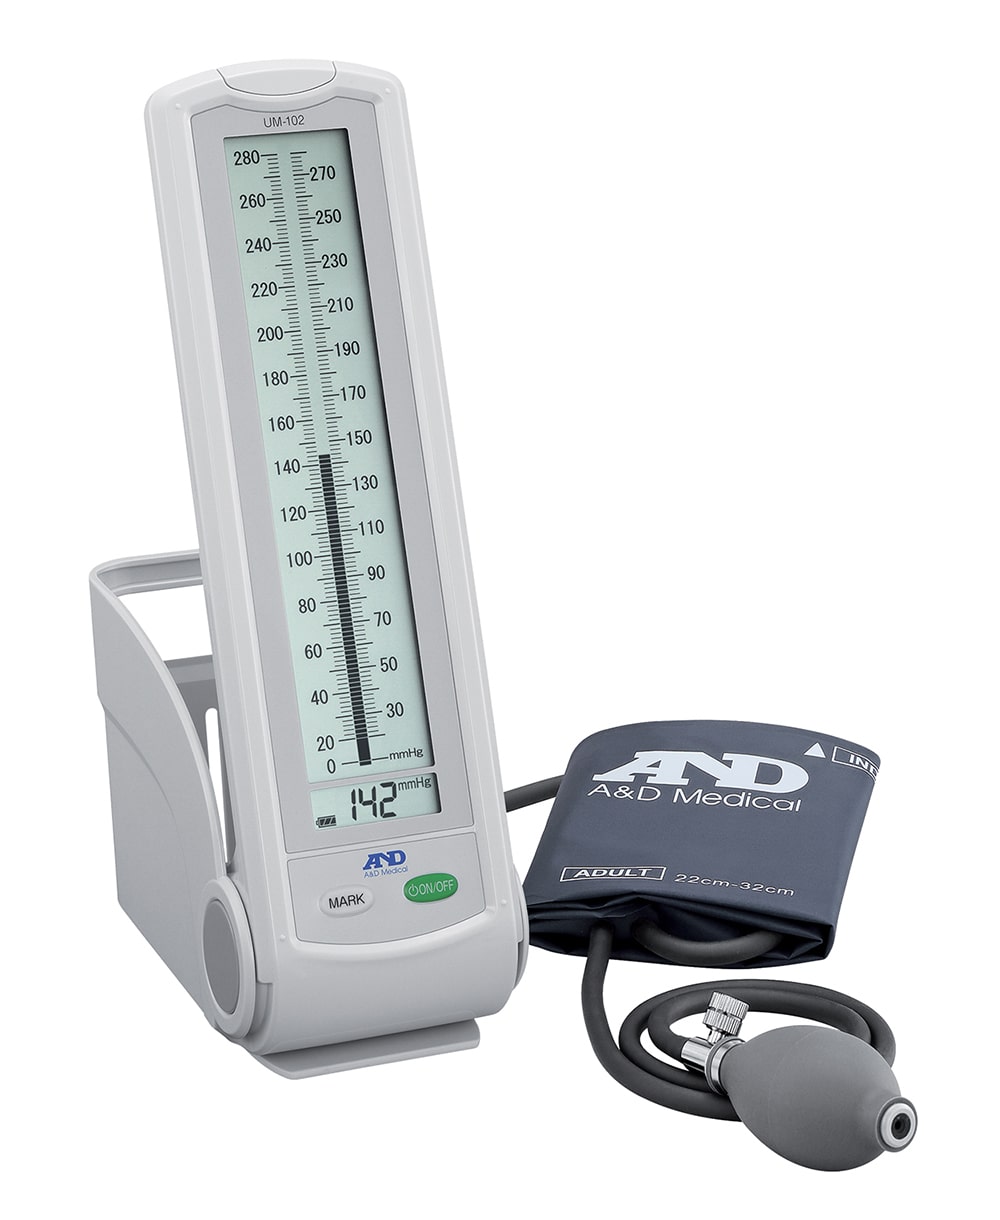 Termometro per febbre digitale con display grande SFT 08 - Termometro